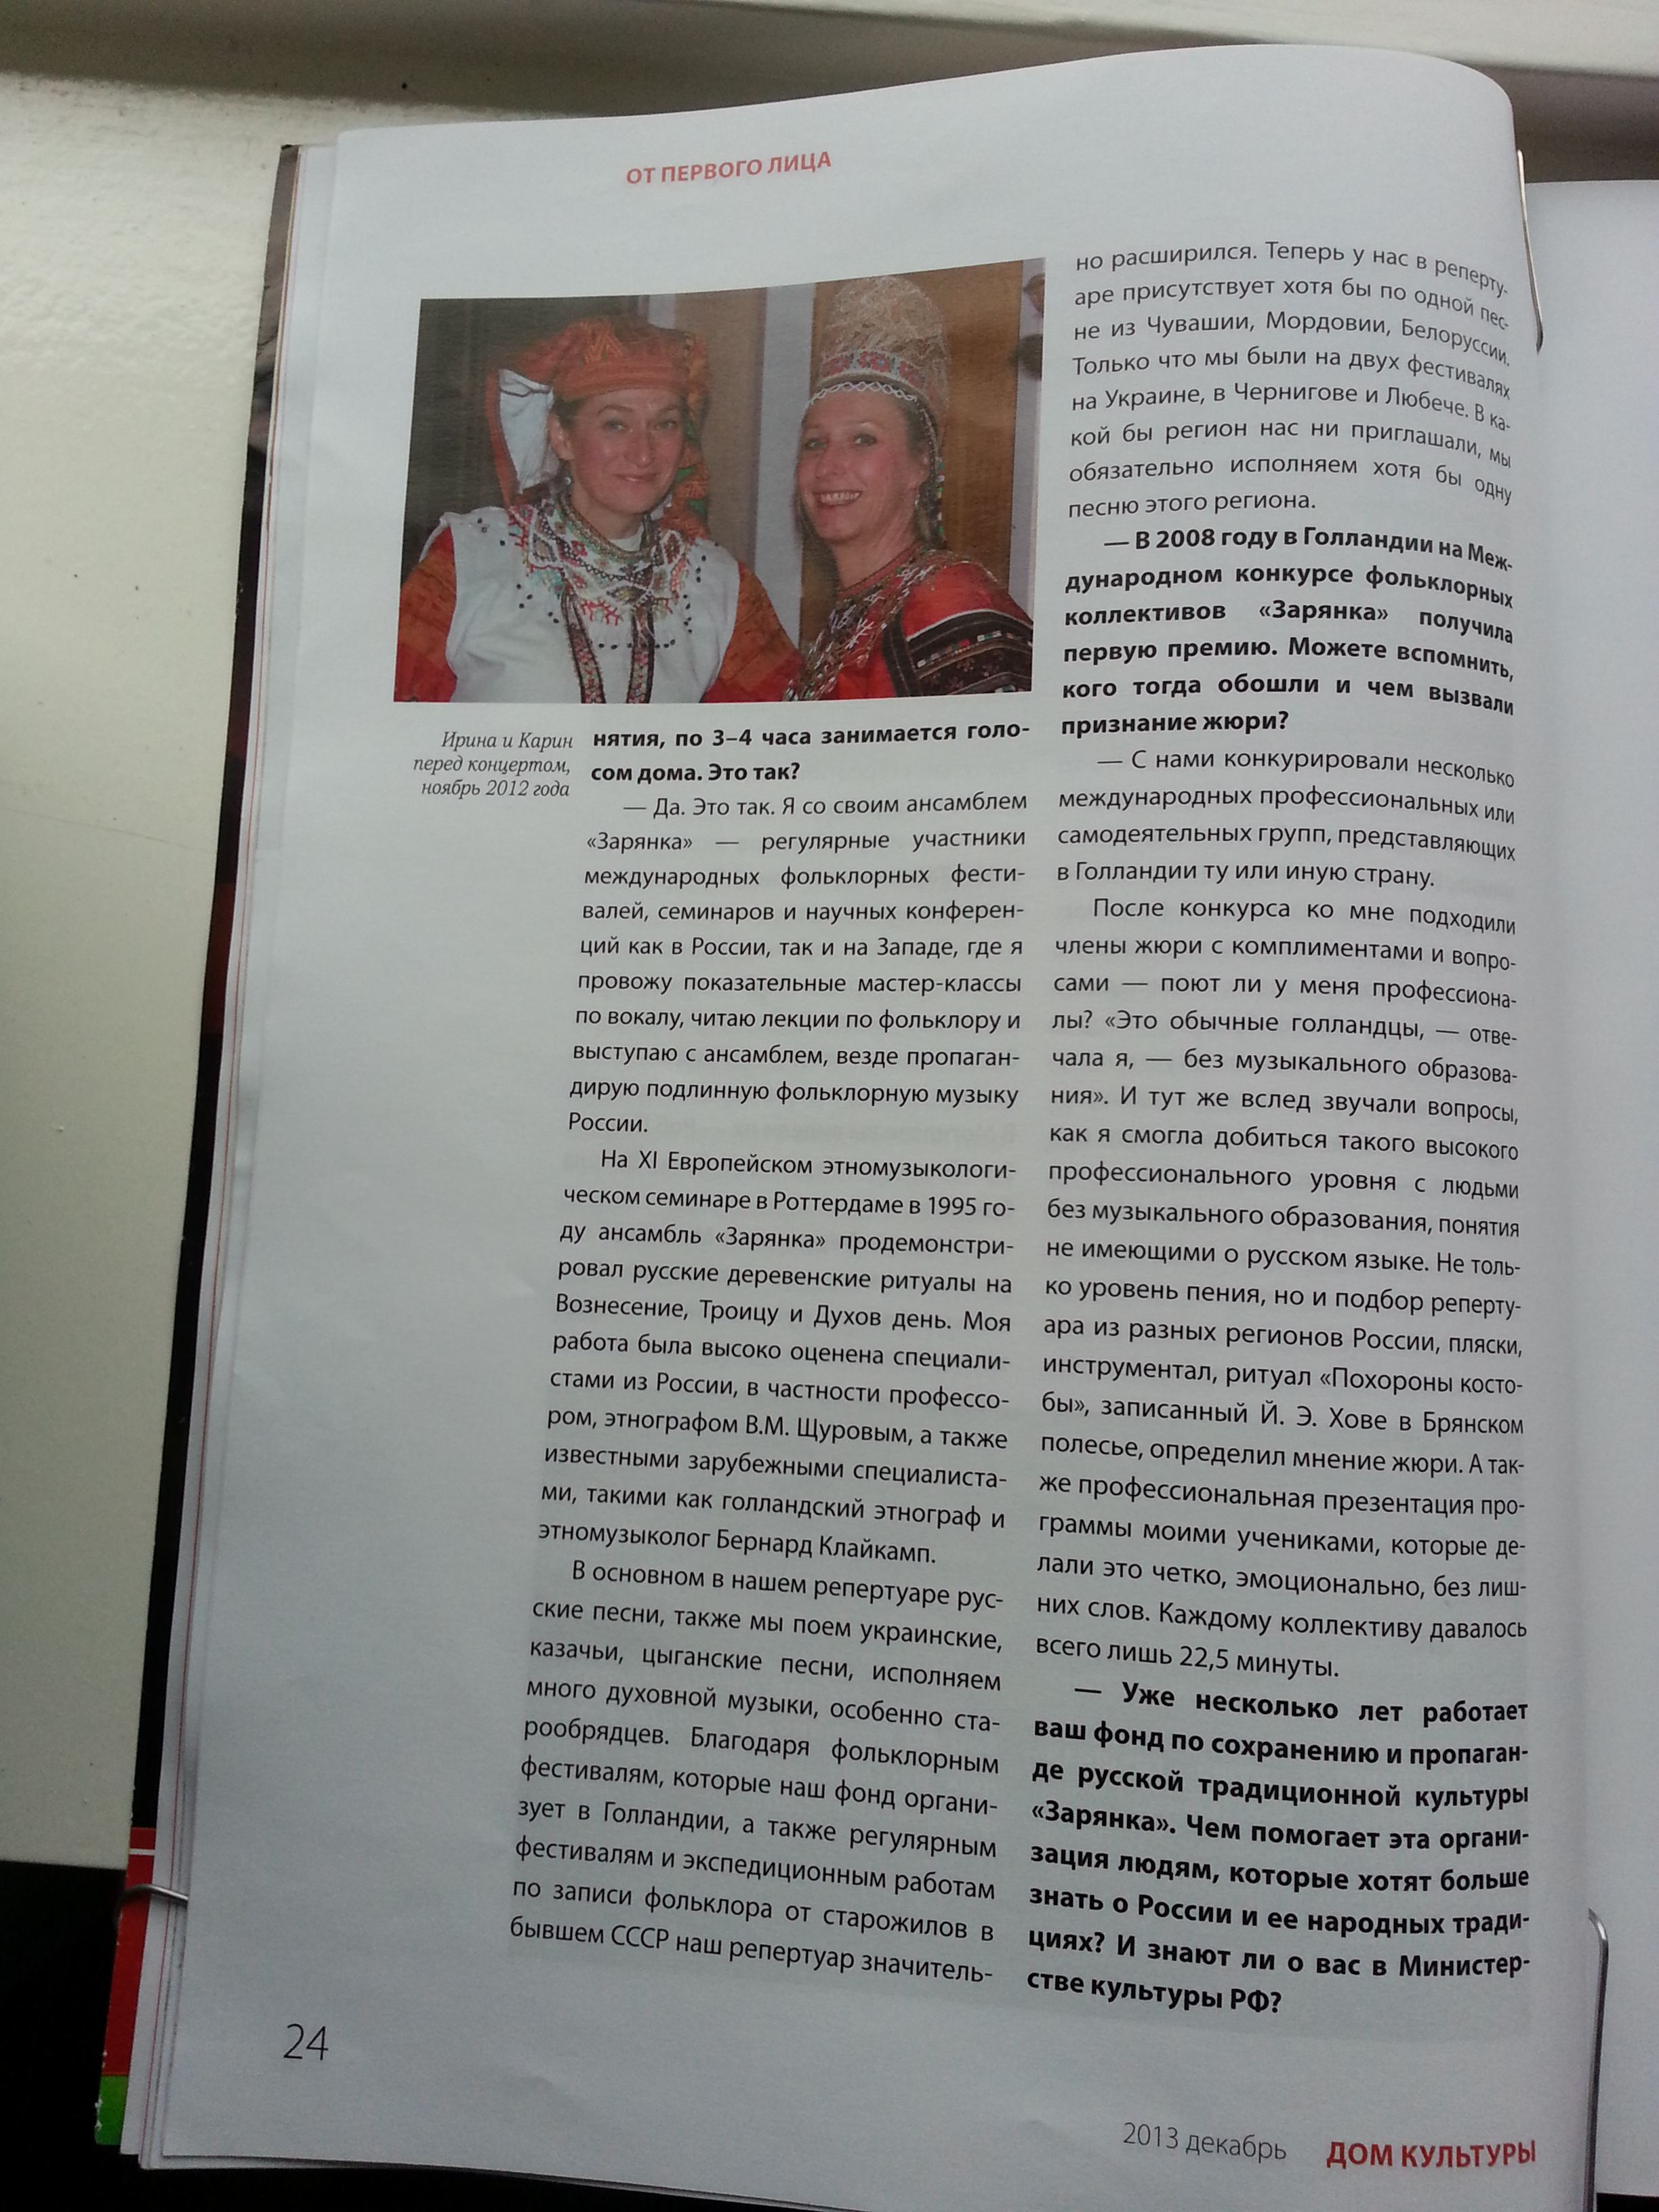 tijdschrift "Huis van cultuur" dec. 2013 Moskou. Irina Raspopova: Overal propagandeer ik echte folklore muziek van Rusland"